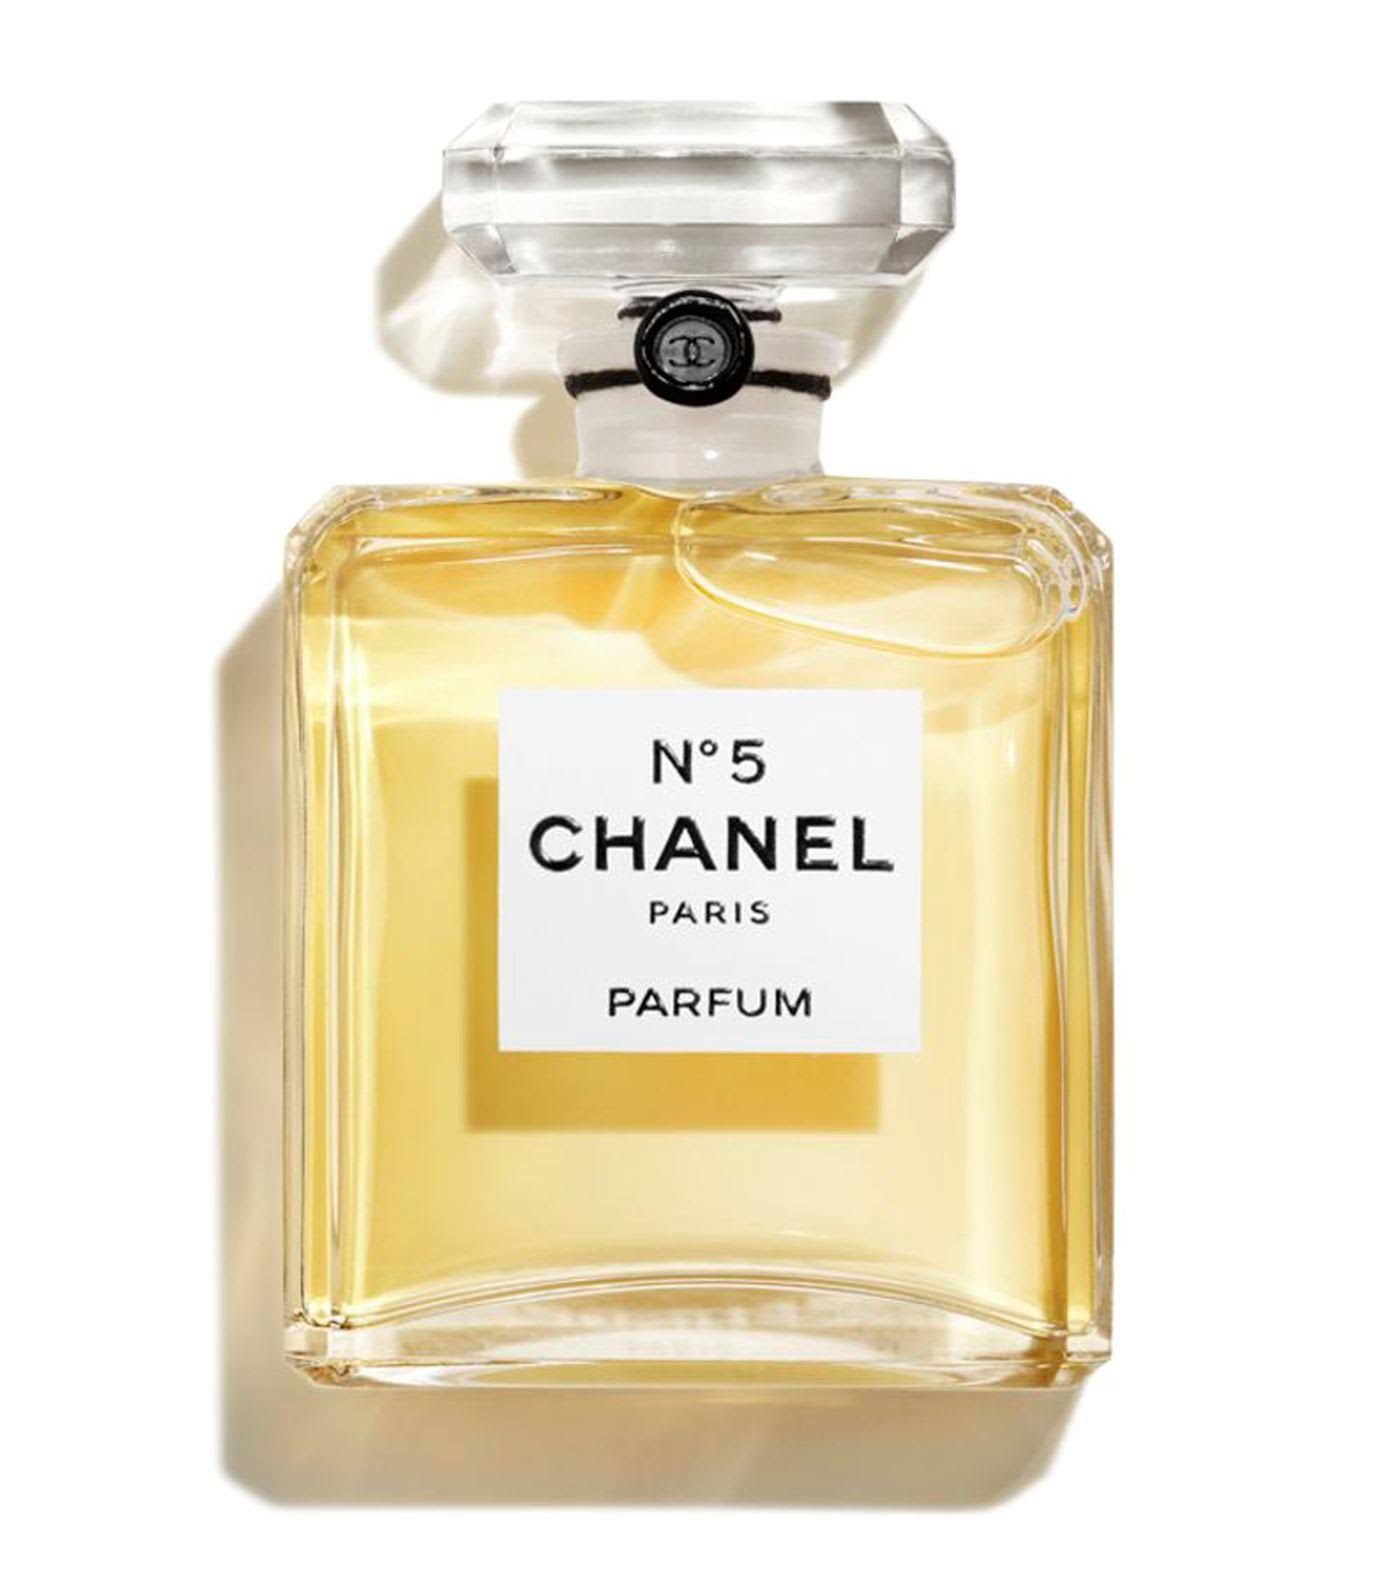 Chanel No.5 Eau de Parfum Spray - 7.5ml